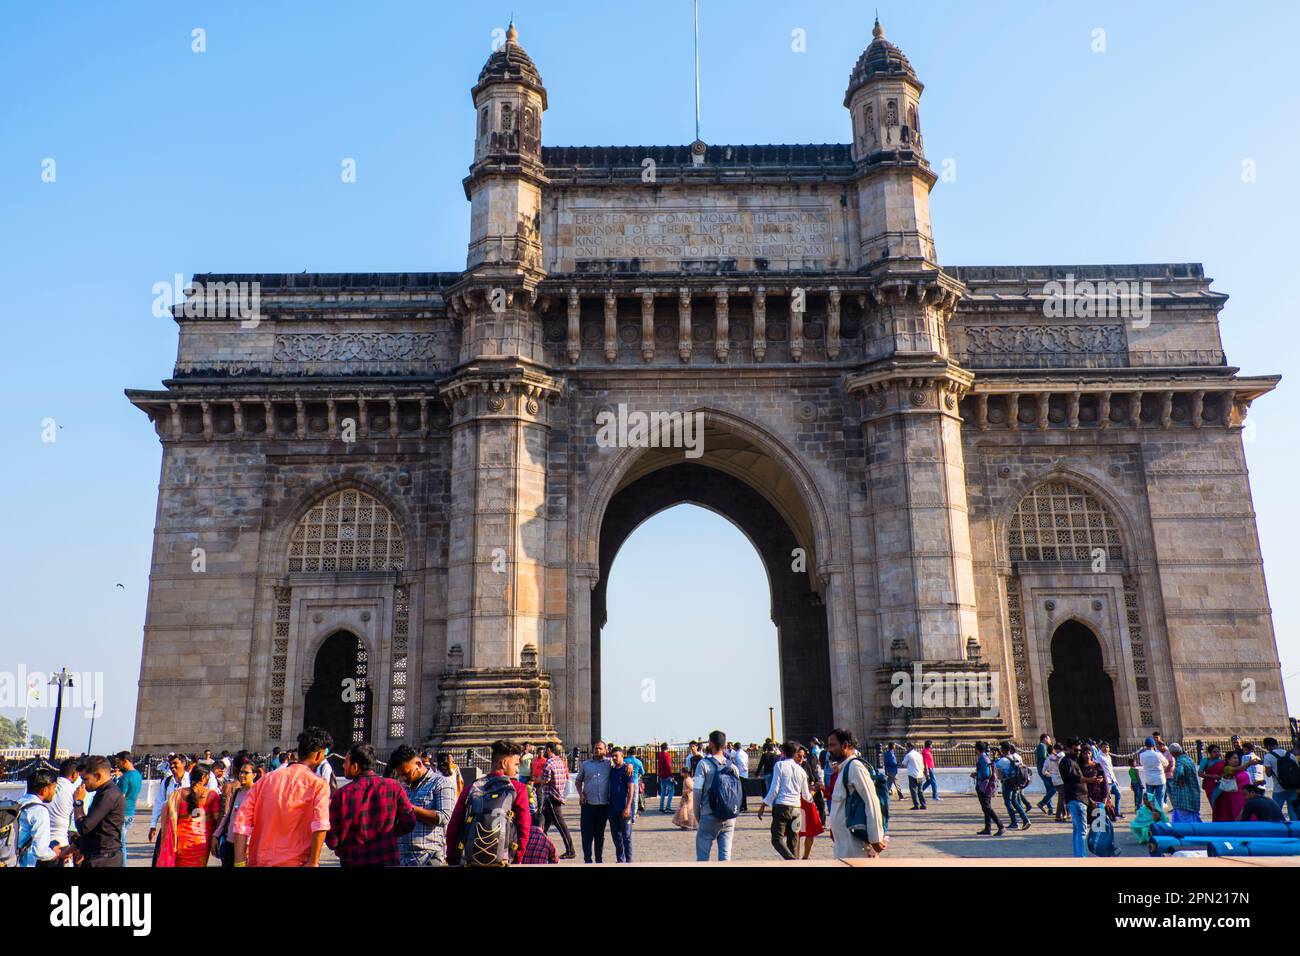 Gateway of India, Colaba, Mumbai, India Stock Photo